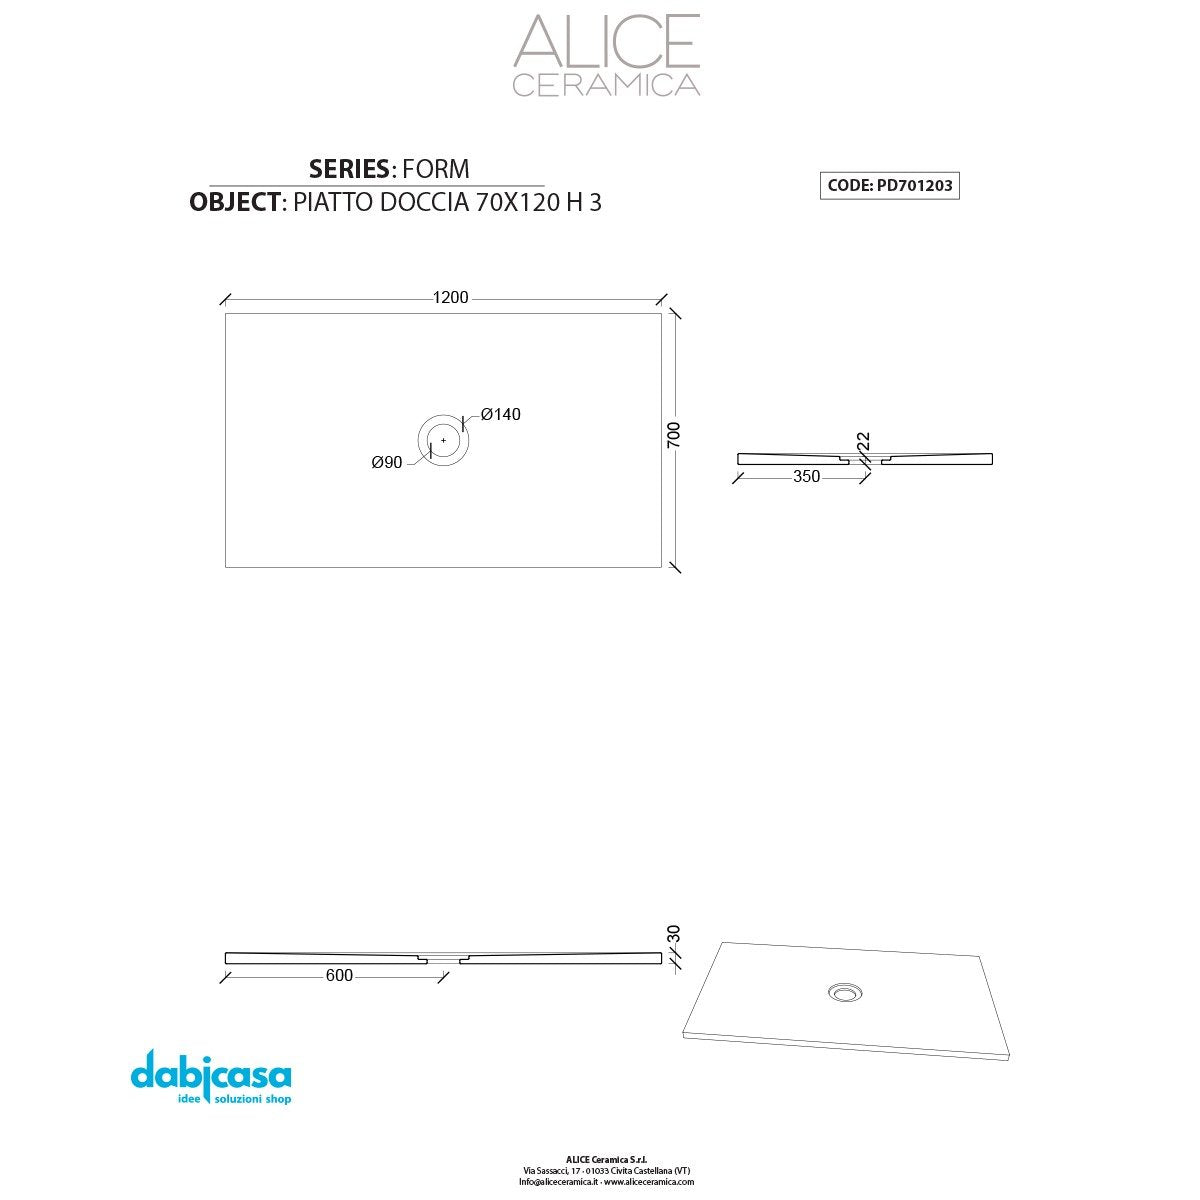 Piatto Doccia Alice Ceramica "Serie Form" 70x120 cm 3H Colore Indaco Opaco freeshipping - Dabicasa